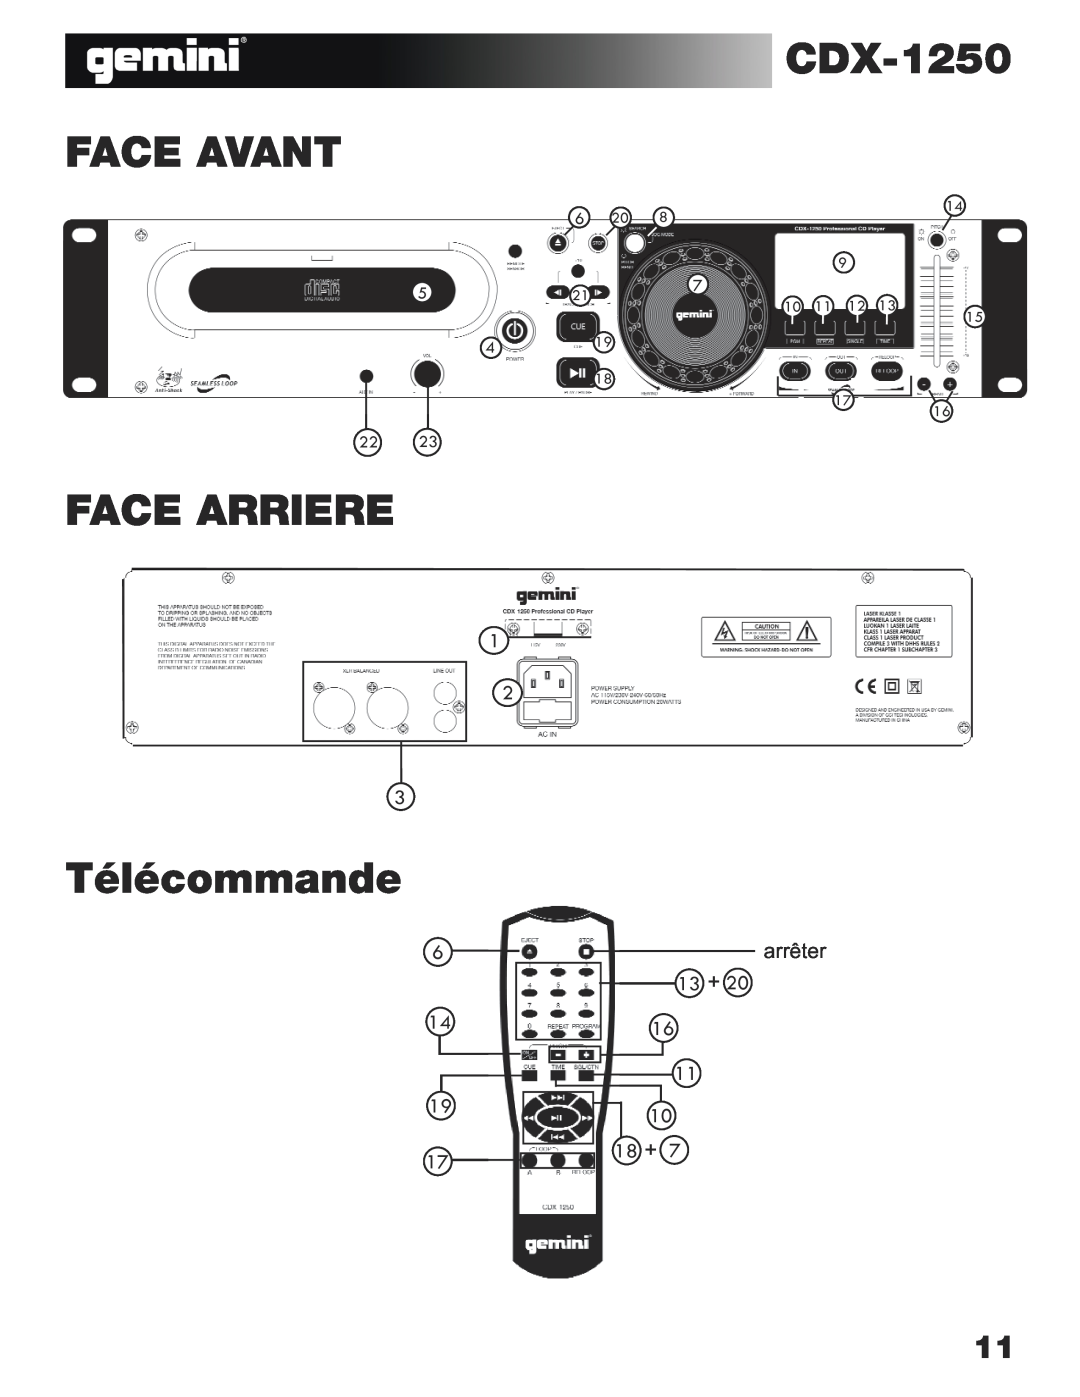 Gemini CDX-1250 manual Face Avant, Face Arriere, Télécommande, arrêter, 13 + 16 11 10 18 + 